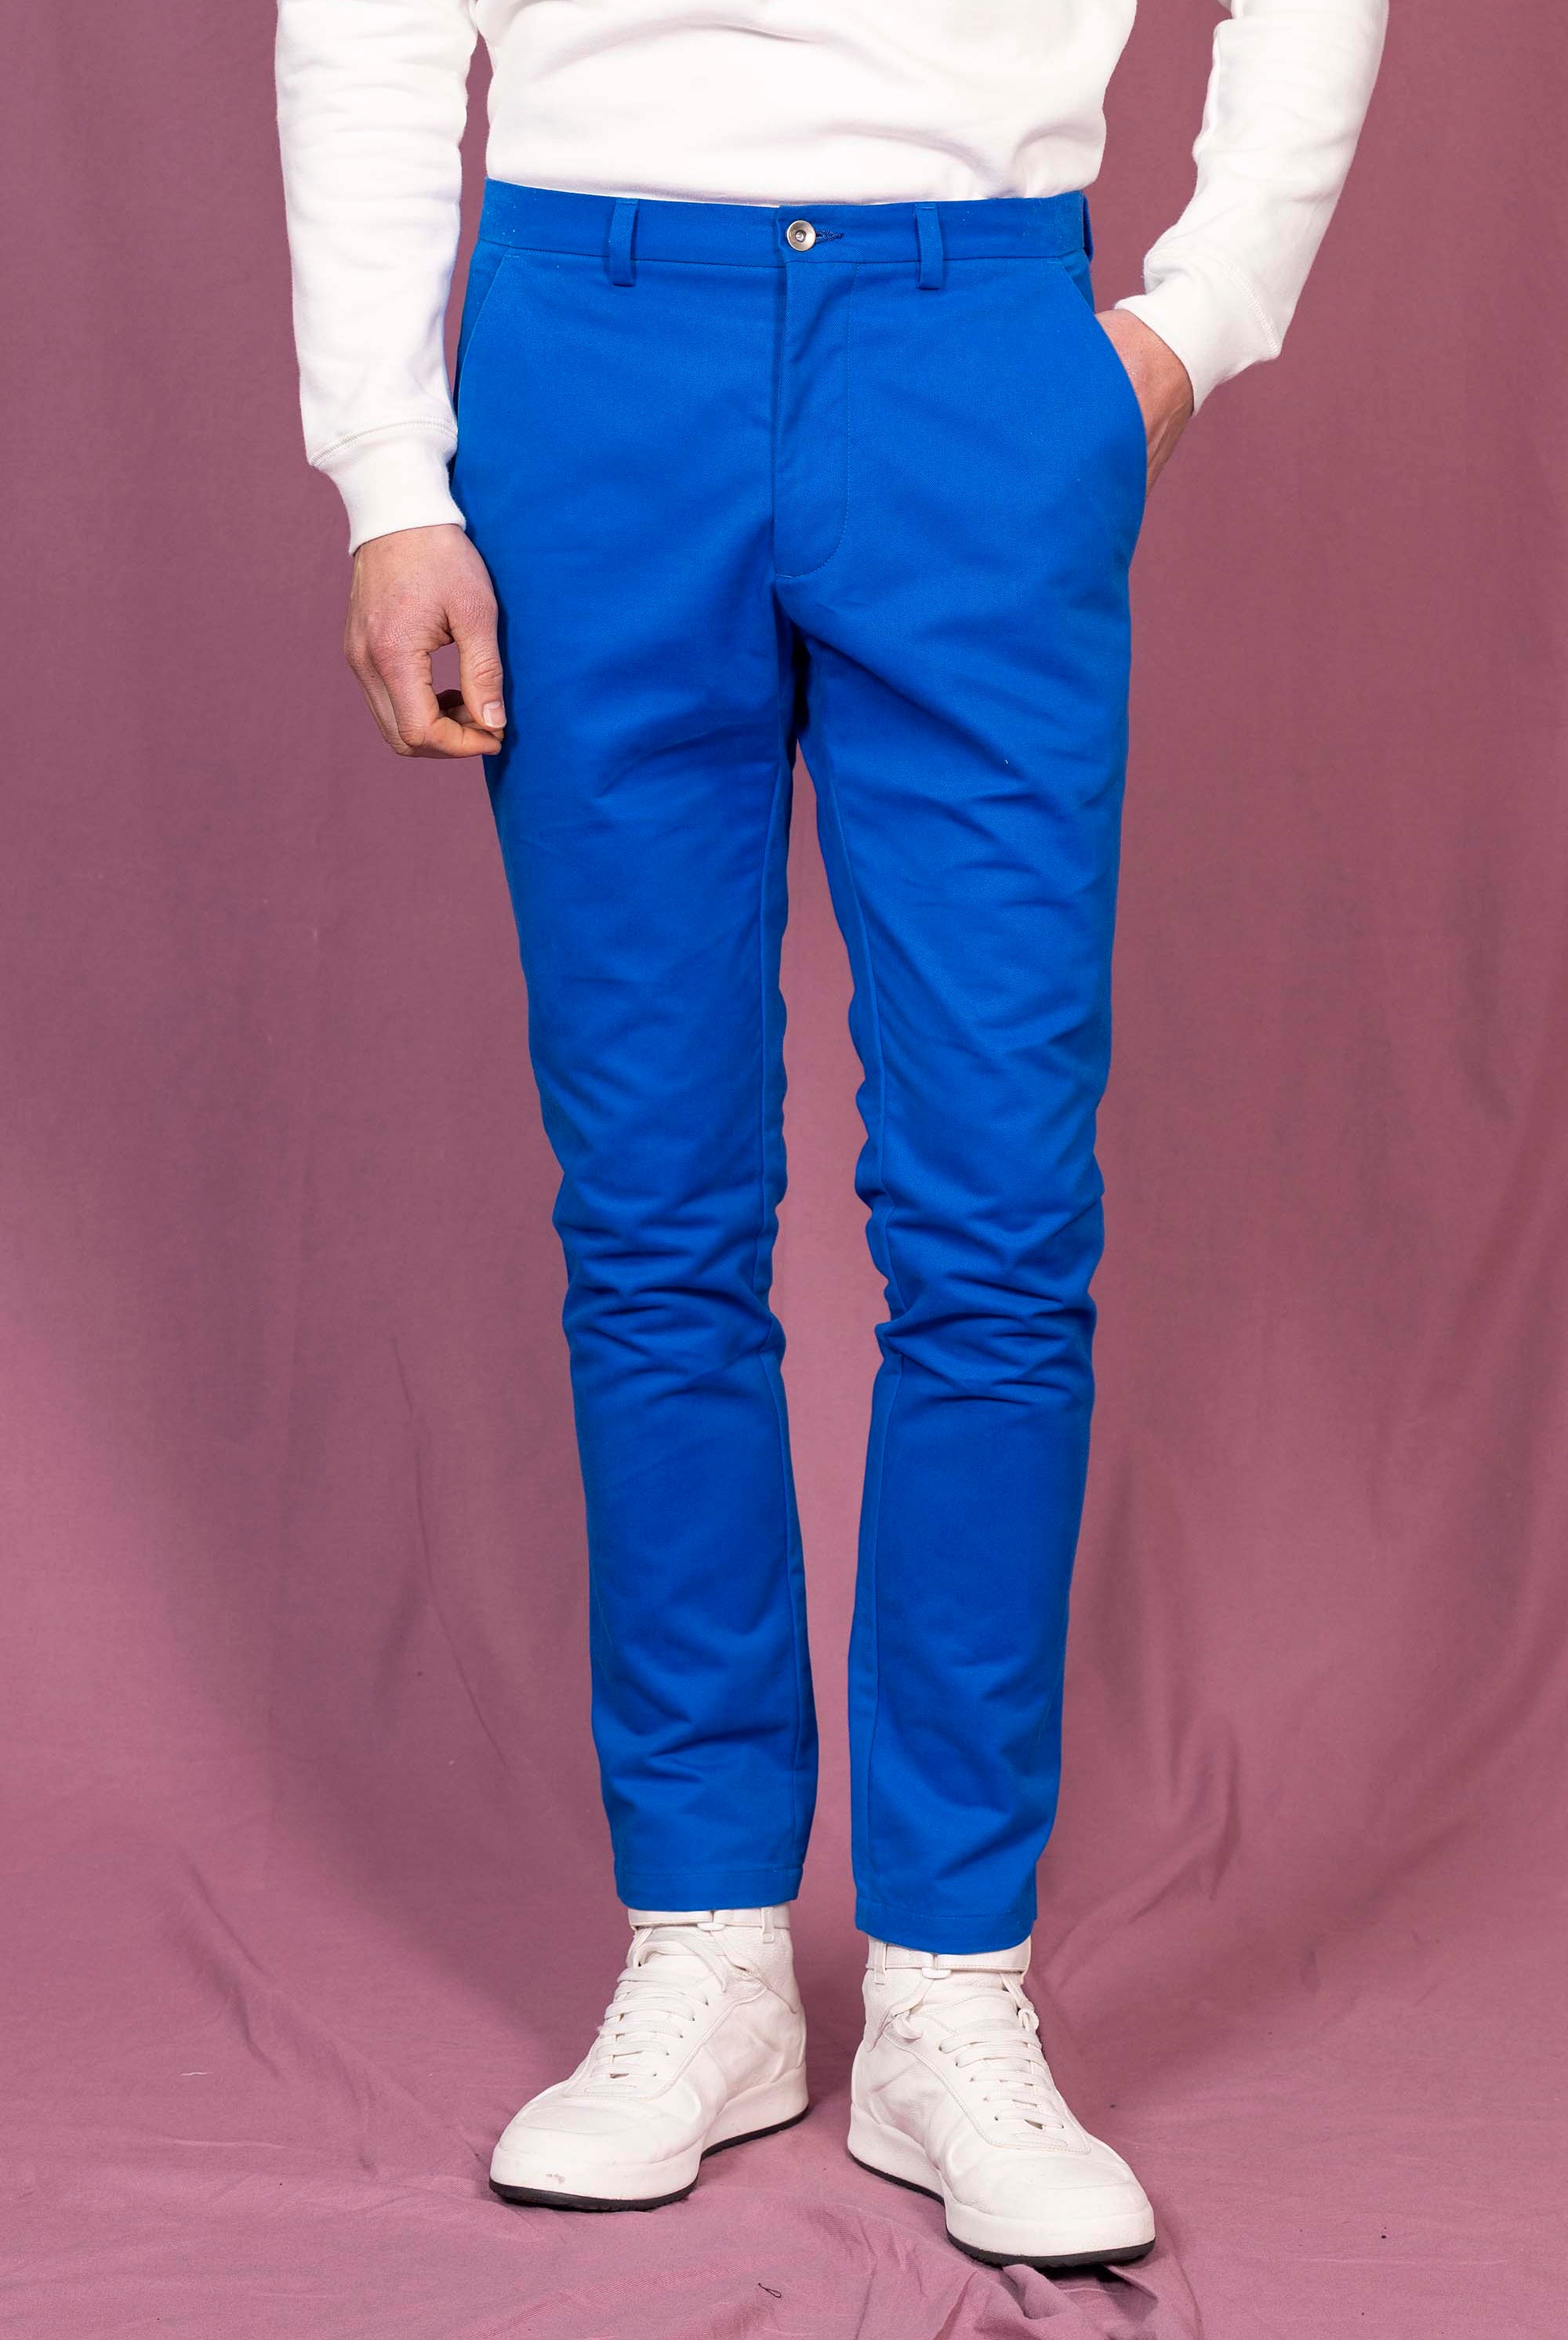 Pantalon General Bleu Saphir le pantalon classique affiche un esprit de distinction